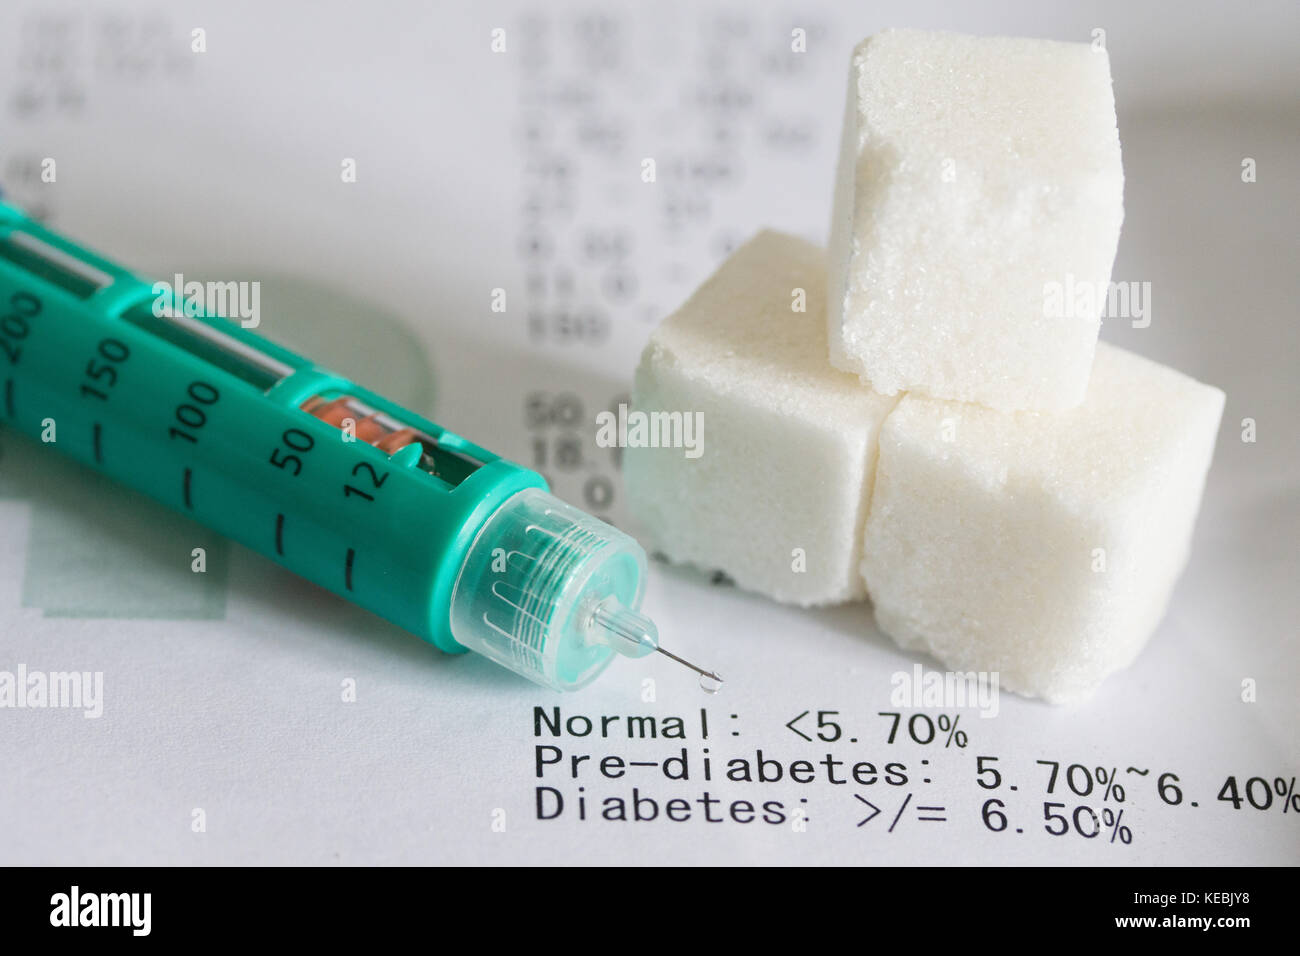 Insulinstift, Zuckerwürfel und daraus resultierender Testausdruck, der auf Diabetes-Probleme hinweist. Stockfoto